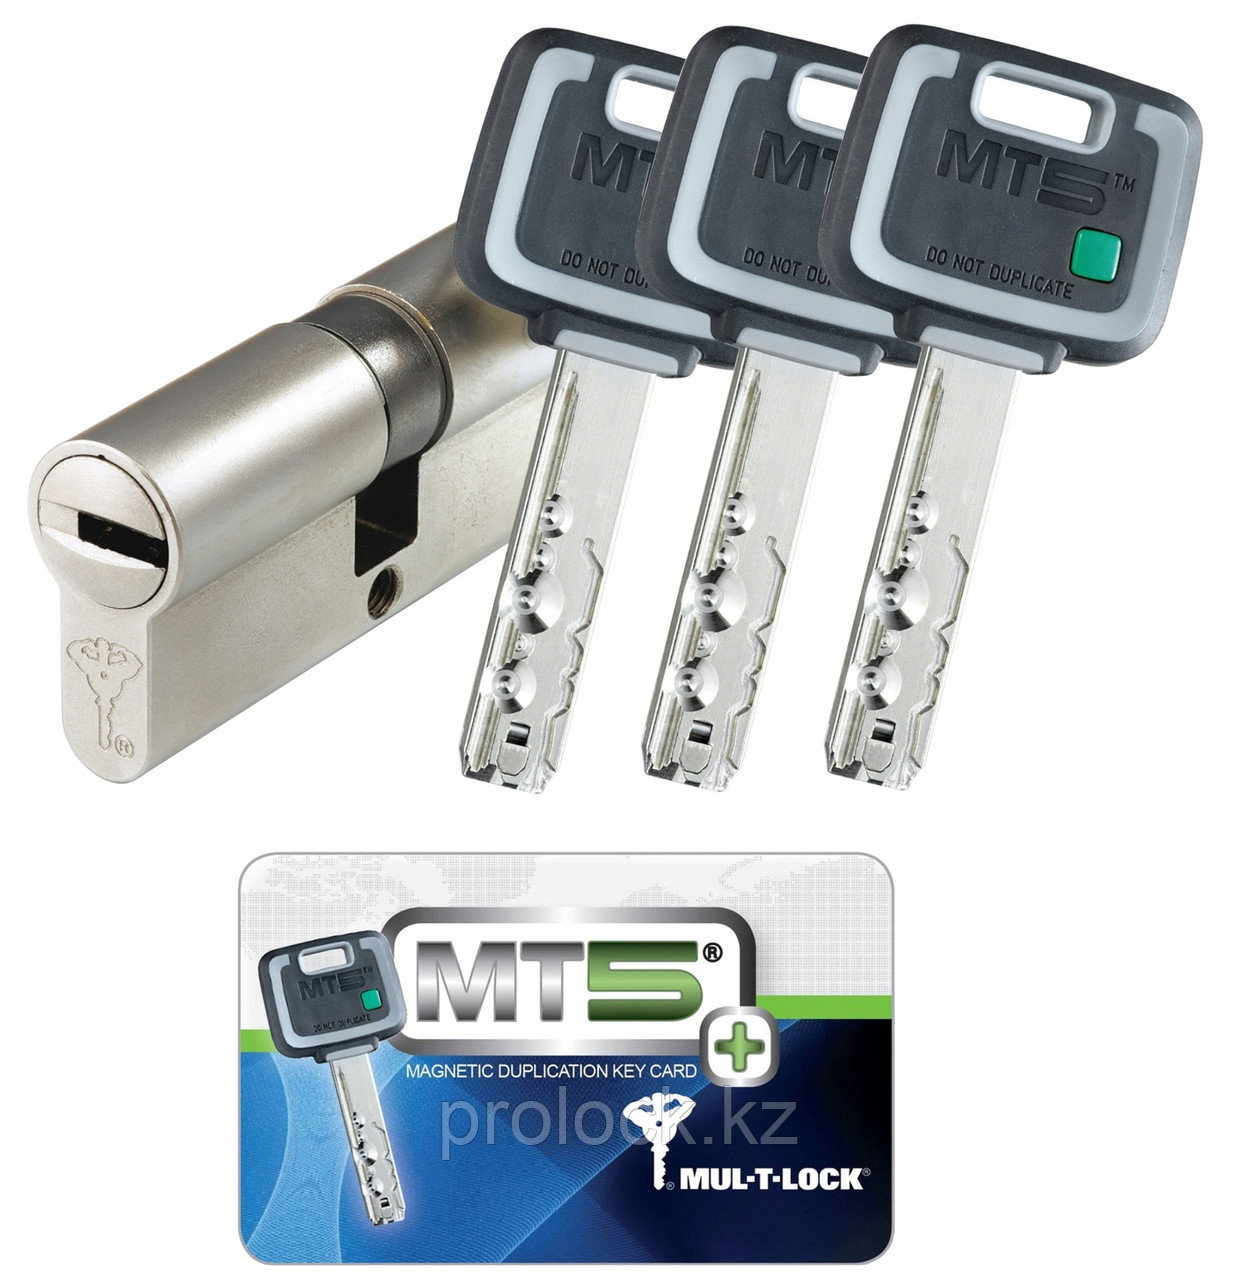 Сердцевина Mul-T-lock MT5+ 55/50  (105) - Новое поколение высокосекретных цилиндров